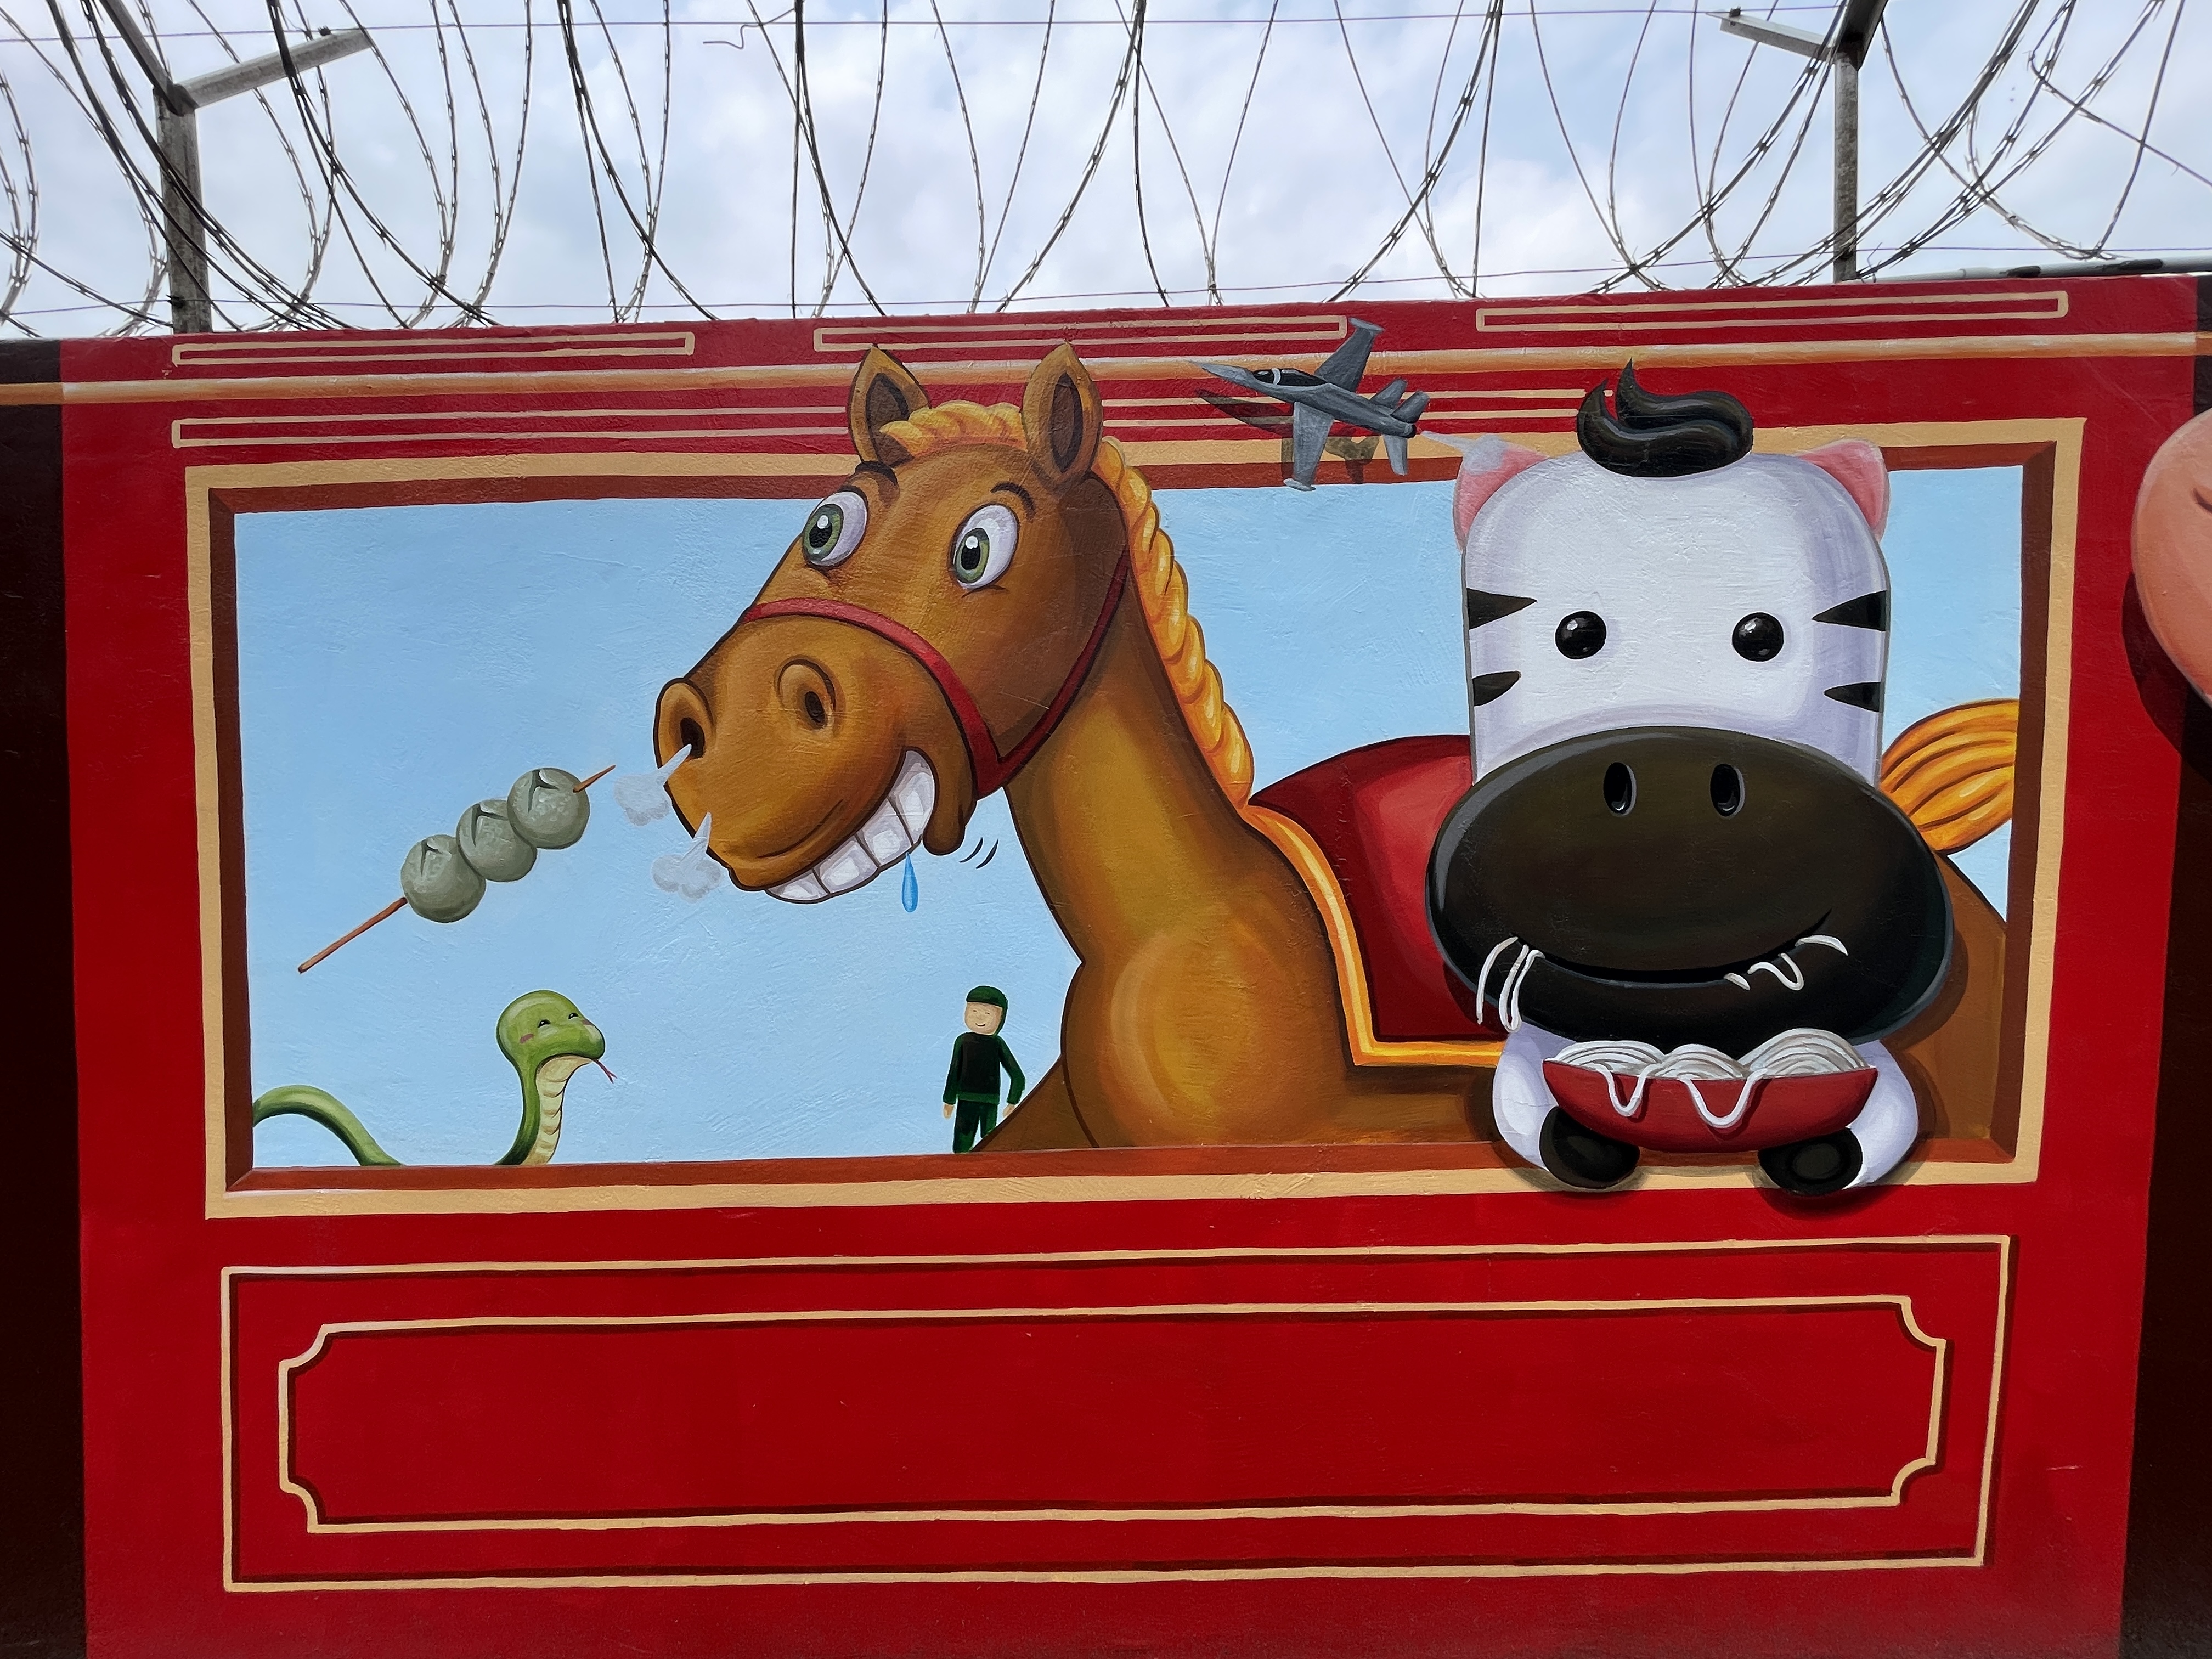 新竹市空军基地旁靠成功路围墙最近完成一大片彩绘，画上以12生肖动物搭铁路小火车的童趣模样、还有米粉跟贡丸。记者张裕珍／摄影